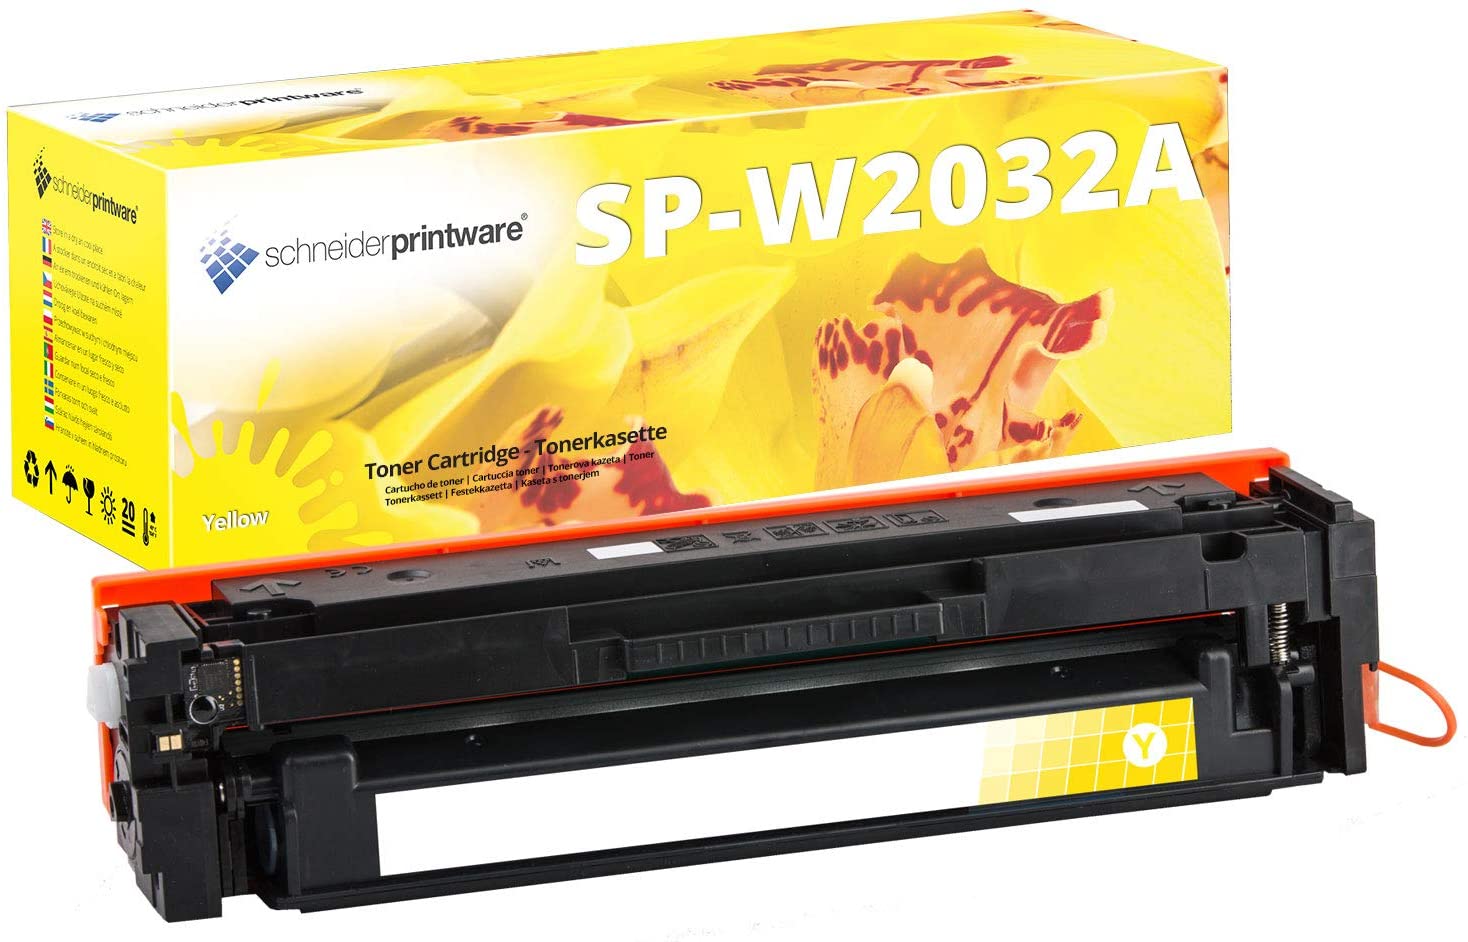 Schneiderprintware Toner ersetzt HP 415A W2032A Yellow